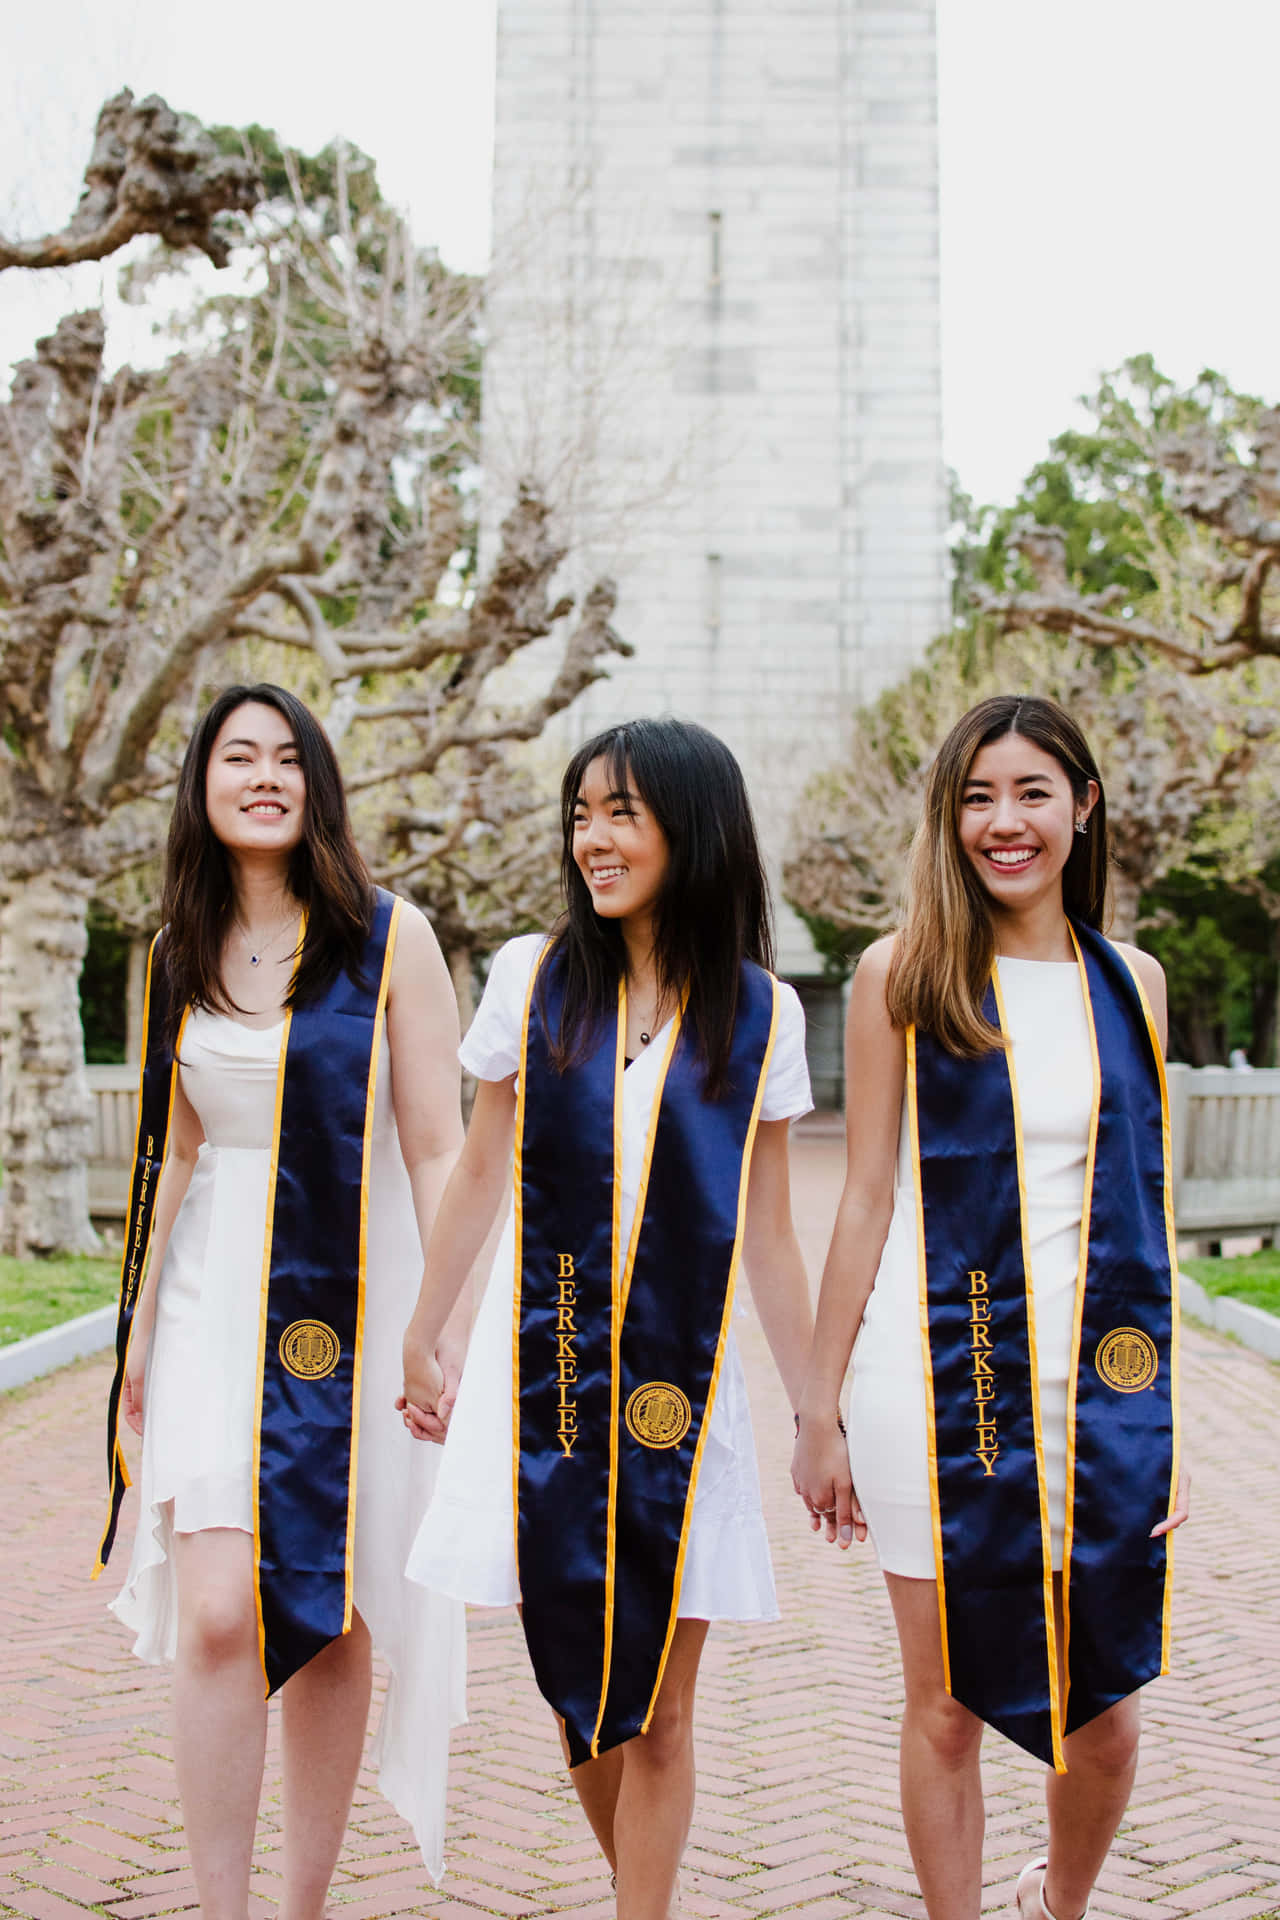 Imagende Tres Chicas Graduadas De La Universidad.